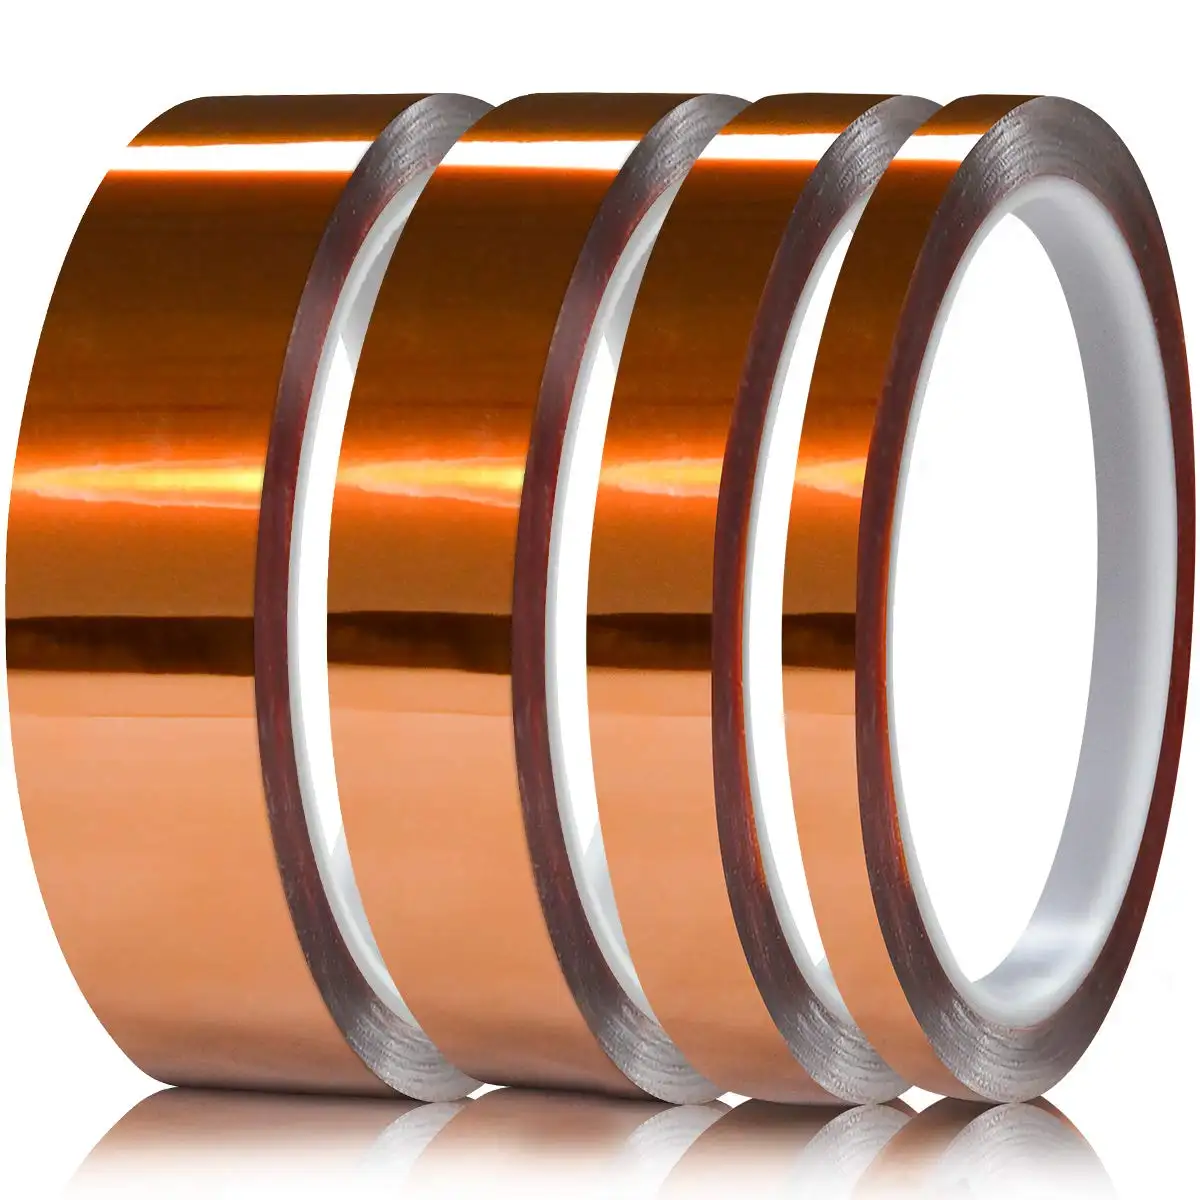 Vendita calda Super adesivo su misura per dito d'oro rotoli di tronchi nastri autoadesivi nastro in Polyimide